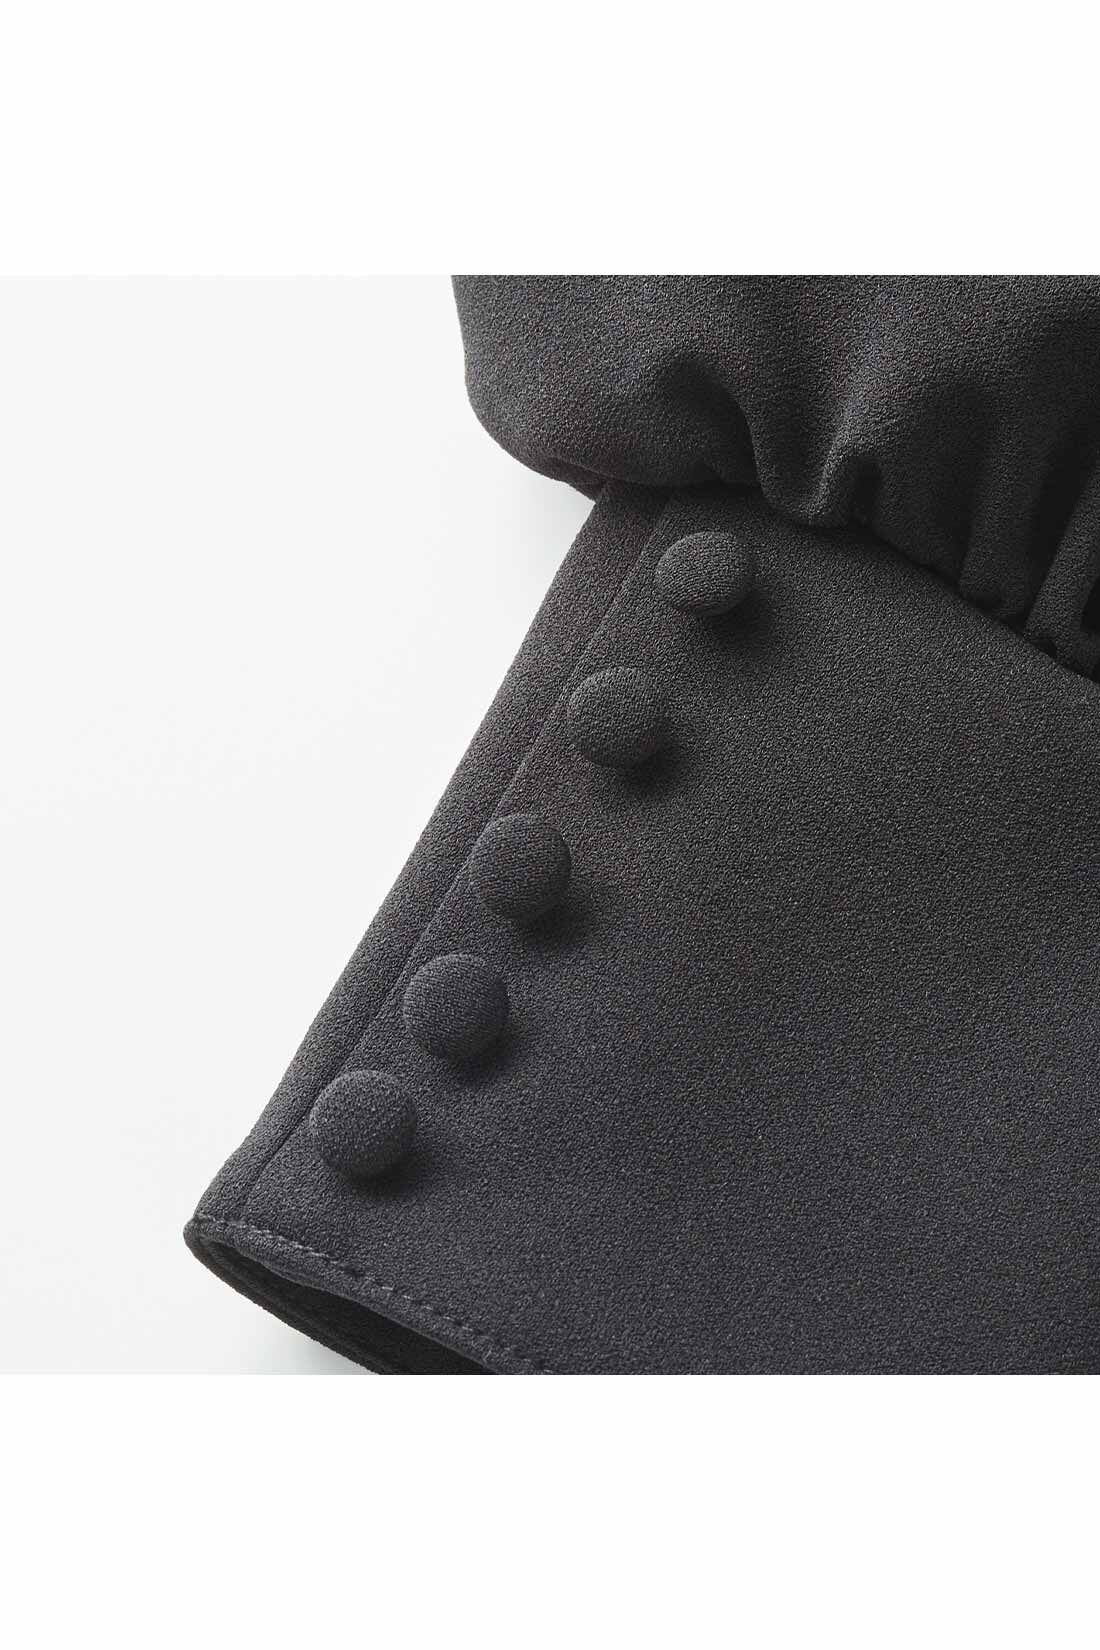 Live in  comfort|リブ イン コンフォート きちんとらくちん ぐい伸びカットソージョーゼット ブラックワンピース|袖口は、くるみボタンを上品に飾ったカフス調デザイン。